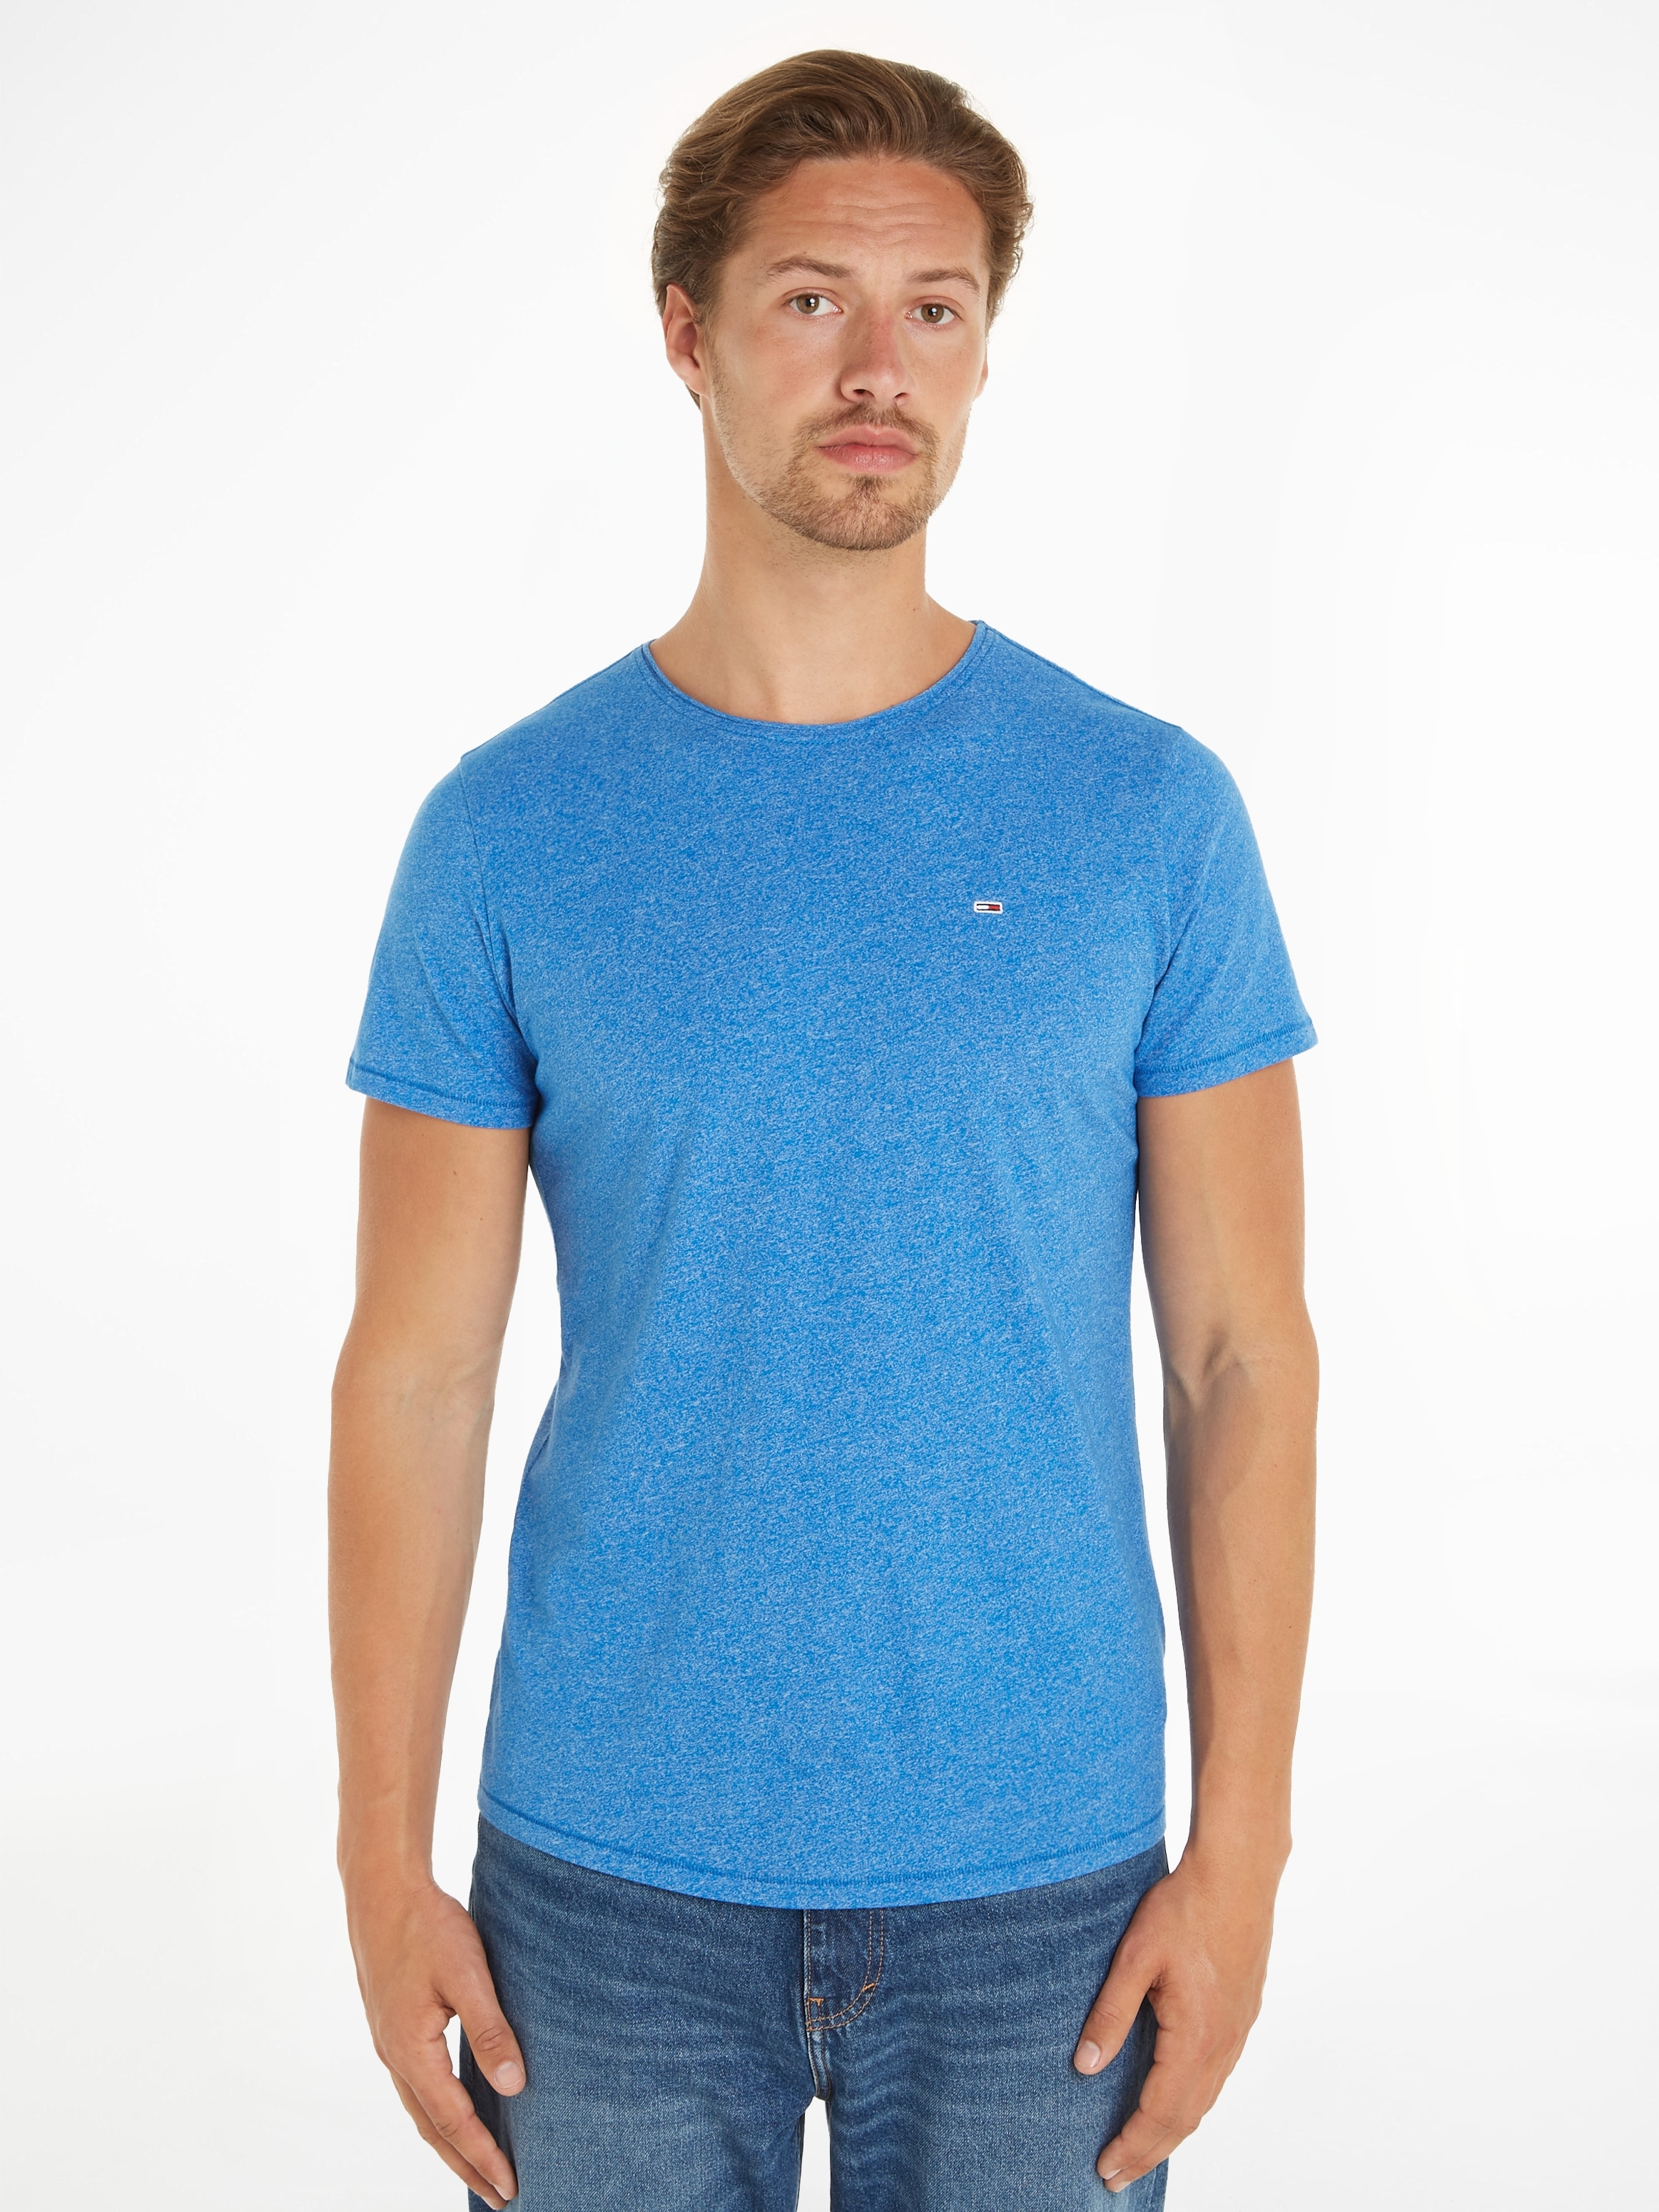 Jeans Markenlabel T-Shirt JASPE SLIM NECK«, Tommy »TJM bestellen C mit